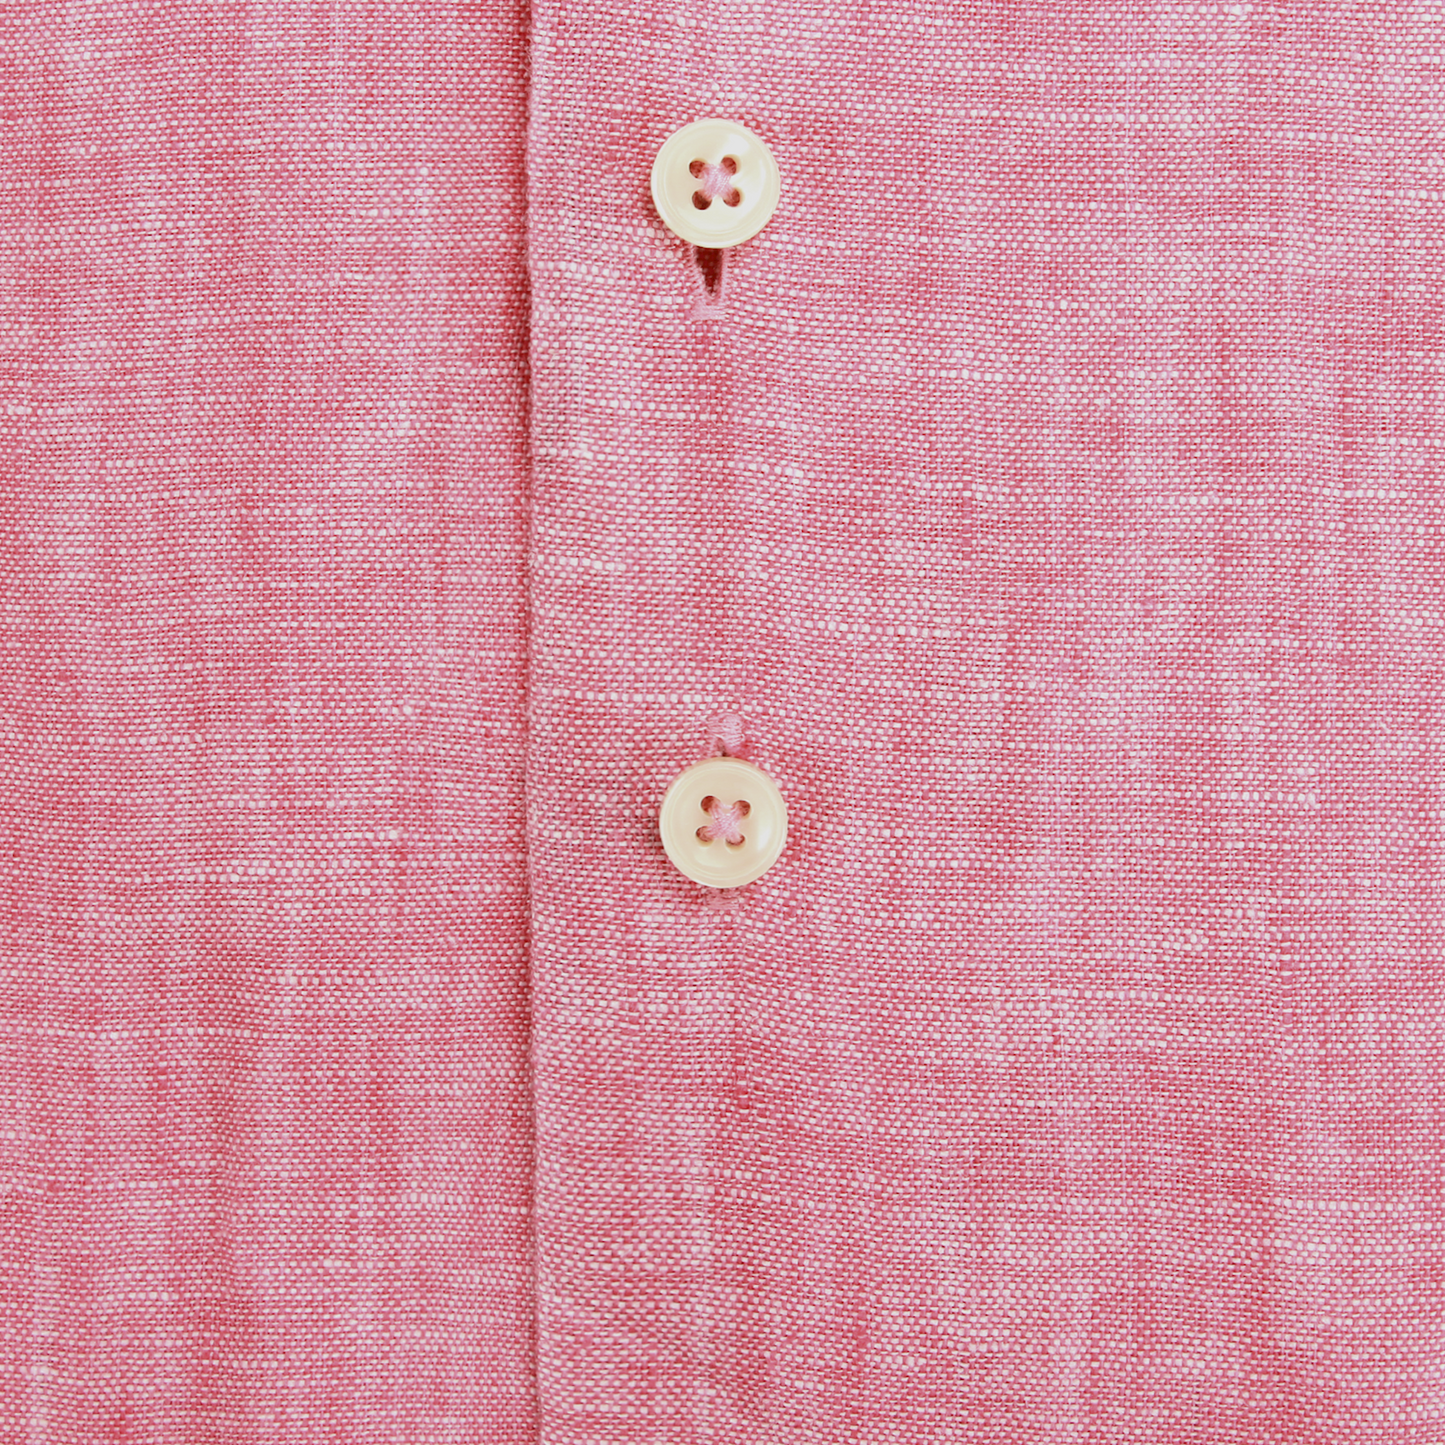 R2 Amsterdam Long Sleeve Linen Shirt - Light Pink